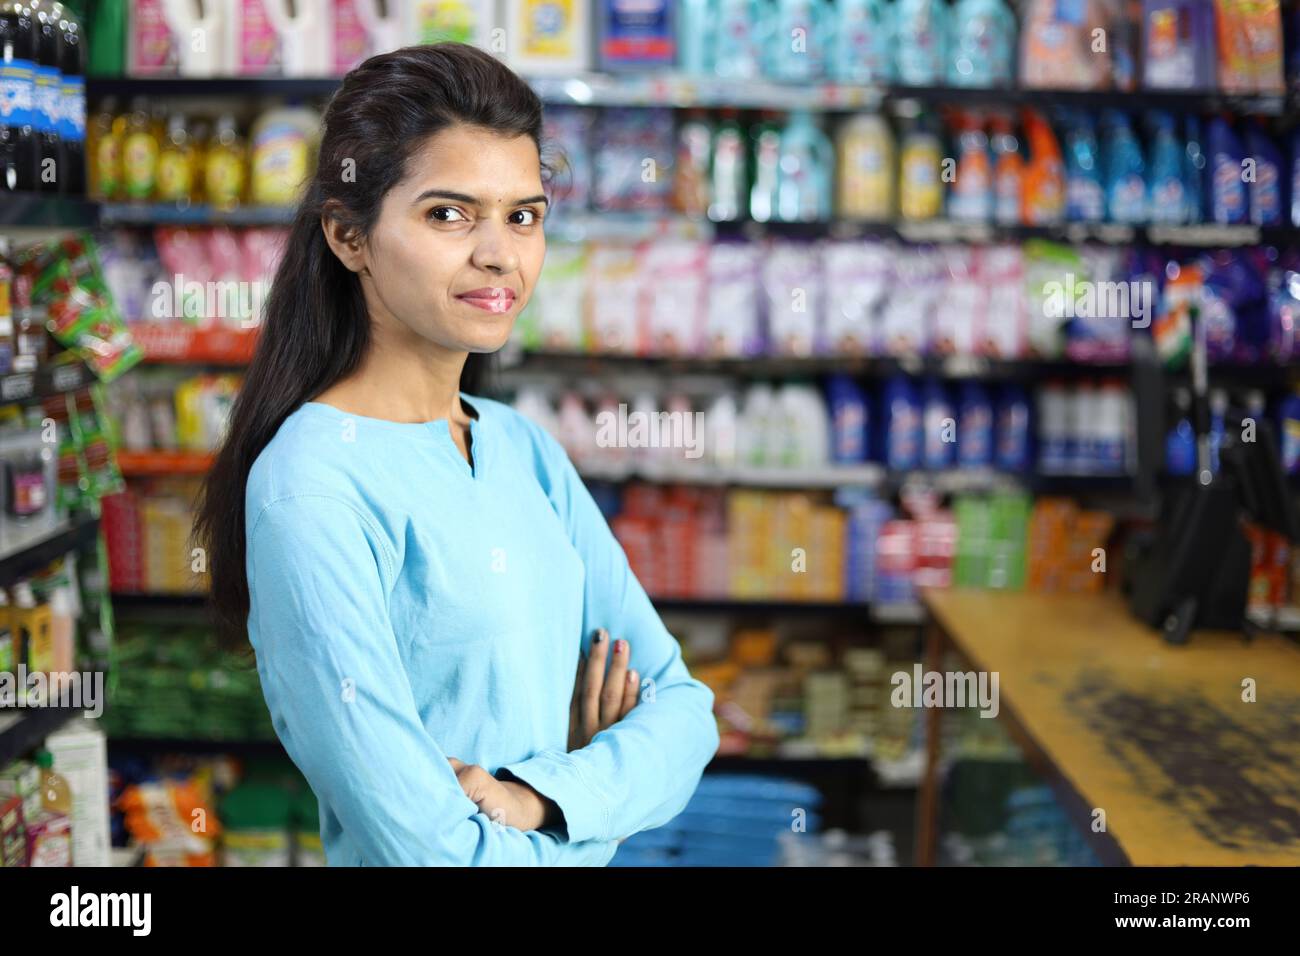 Ritratto di una ragazza indiana felice e sorridente che acquista in un negozio di alimentari. Comprare della spesa per casa in un supermercato. Foto Stock